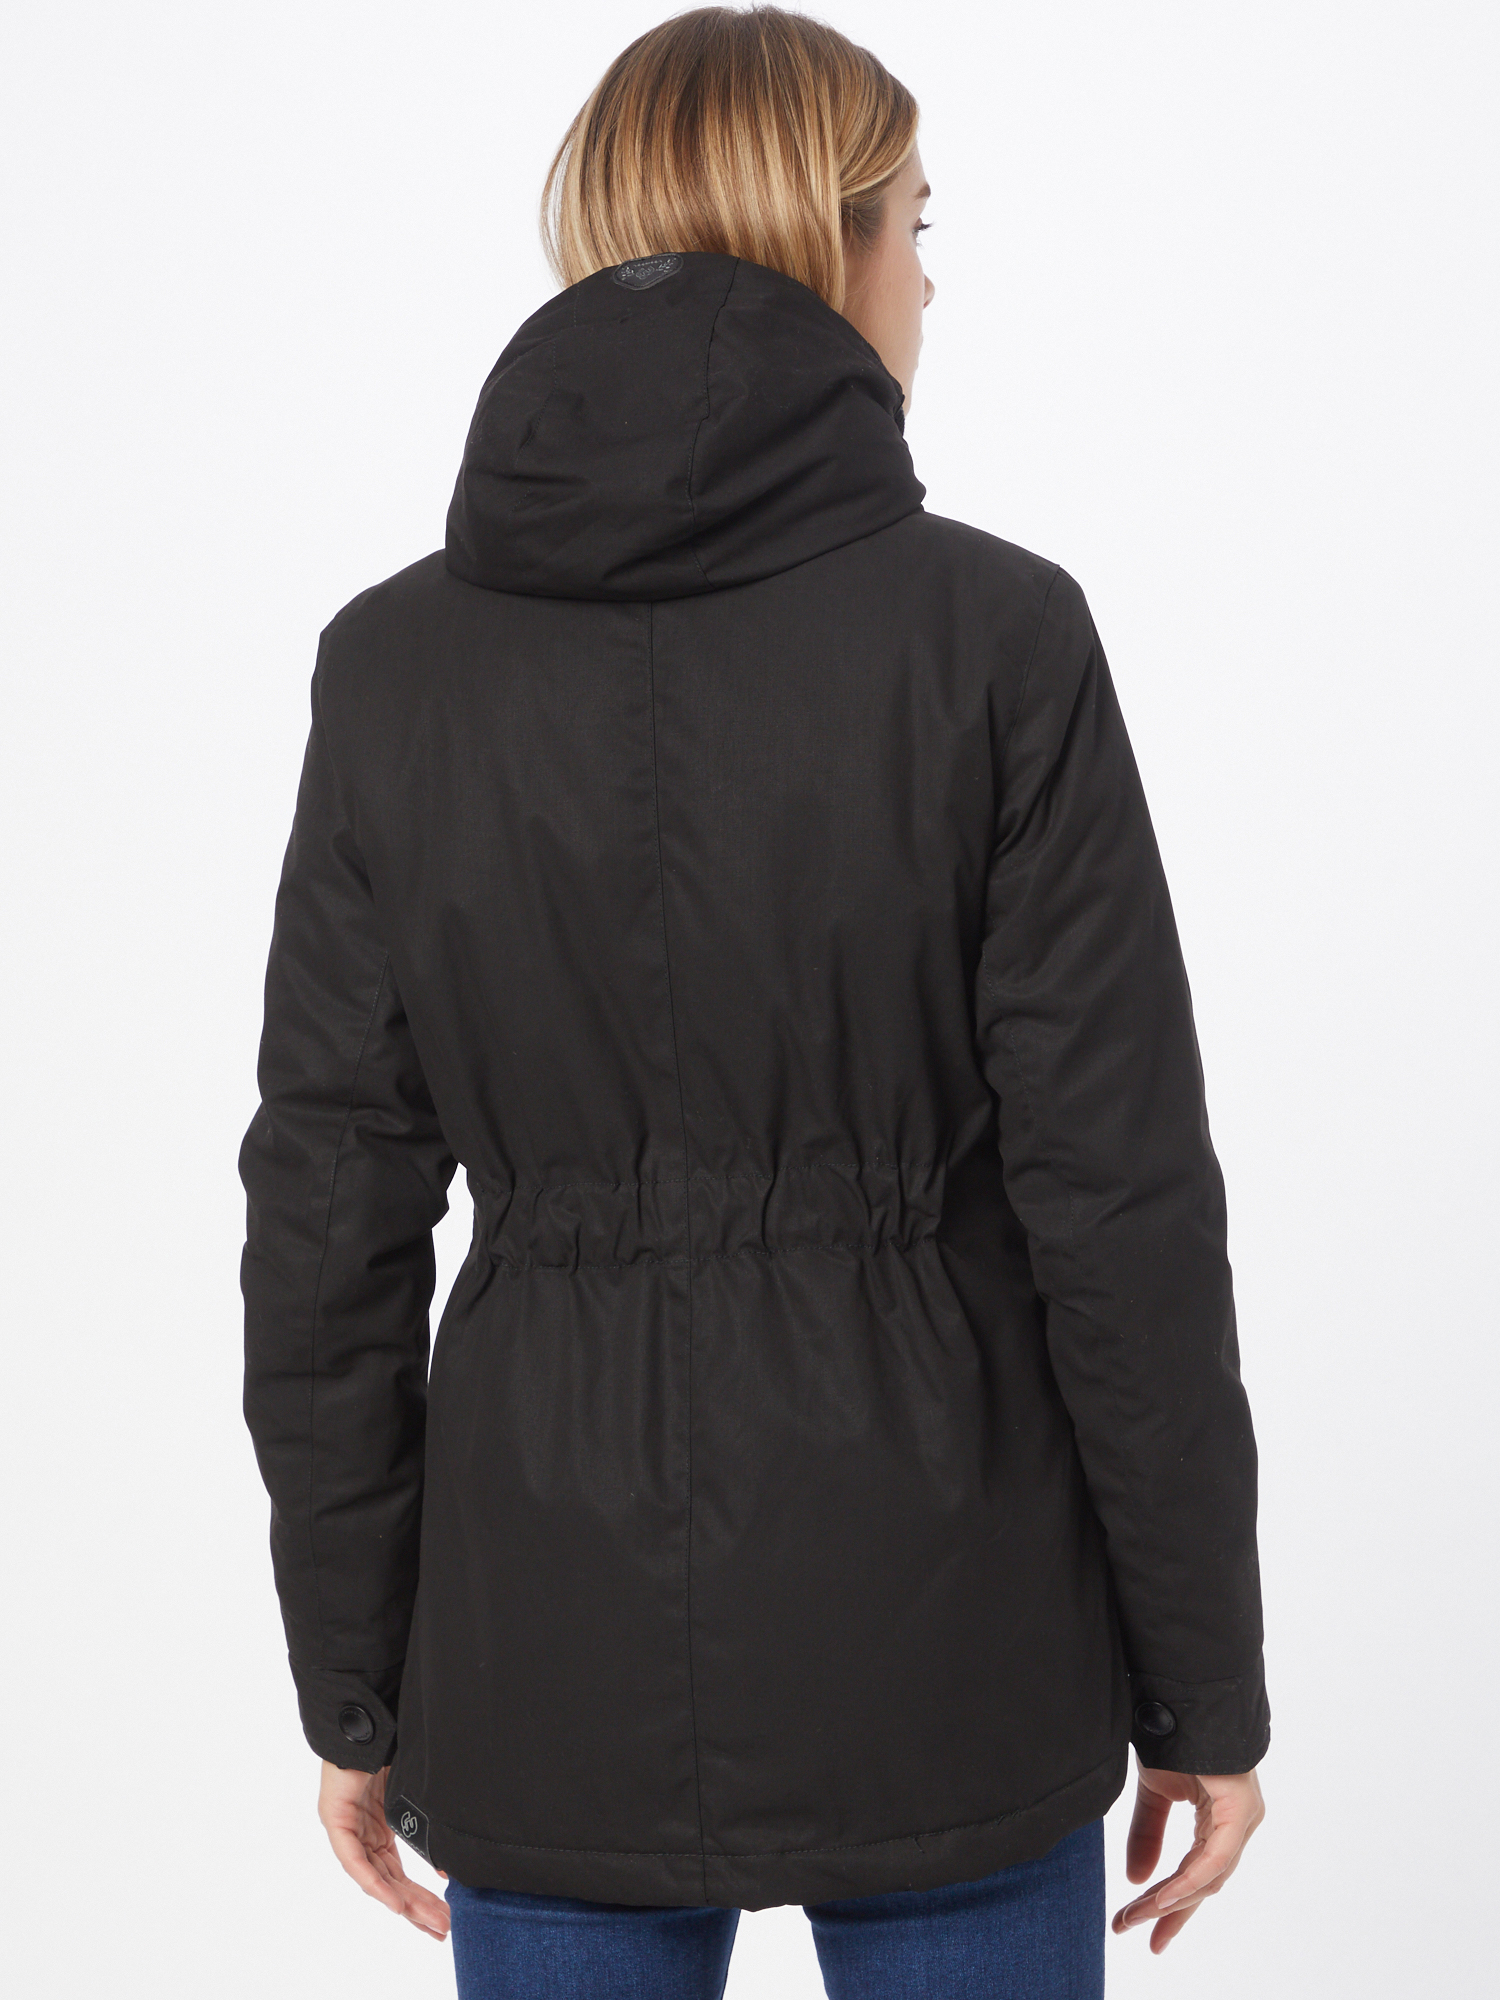 Odzież ejjrE Ragwear Parka zimowa Monade w kolorze Czarnym 